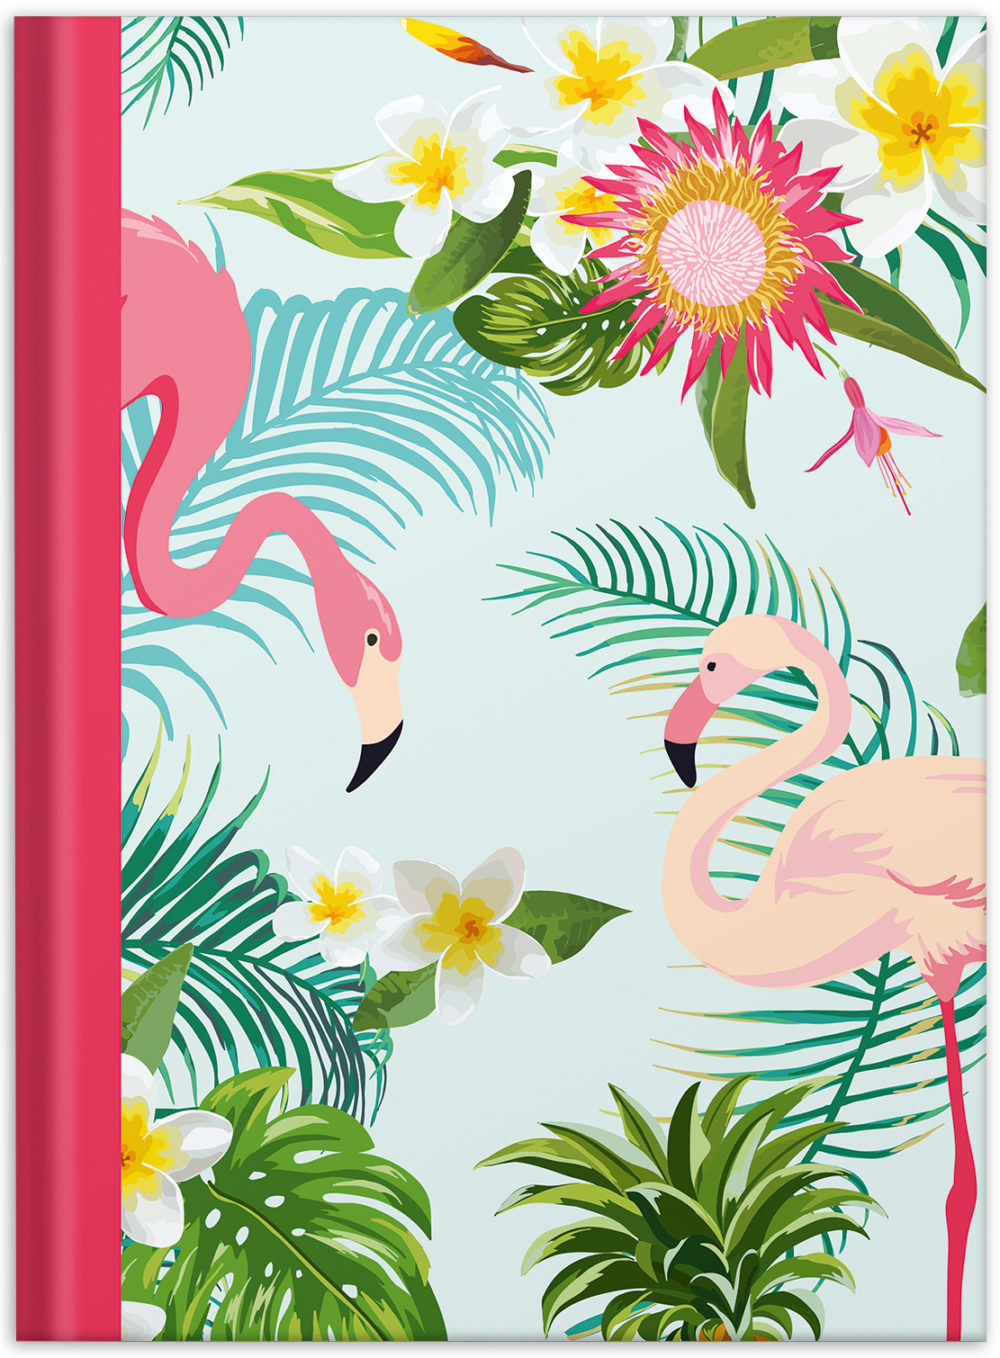 Notizbuch "Flamingo pink" Vorderseite mit Blumen und Flamingos